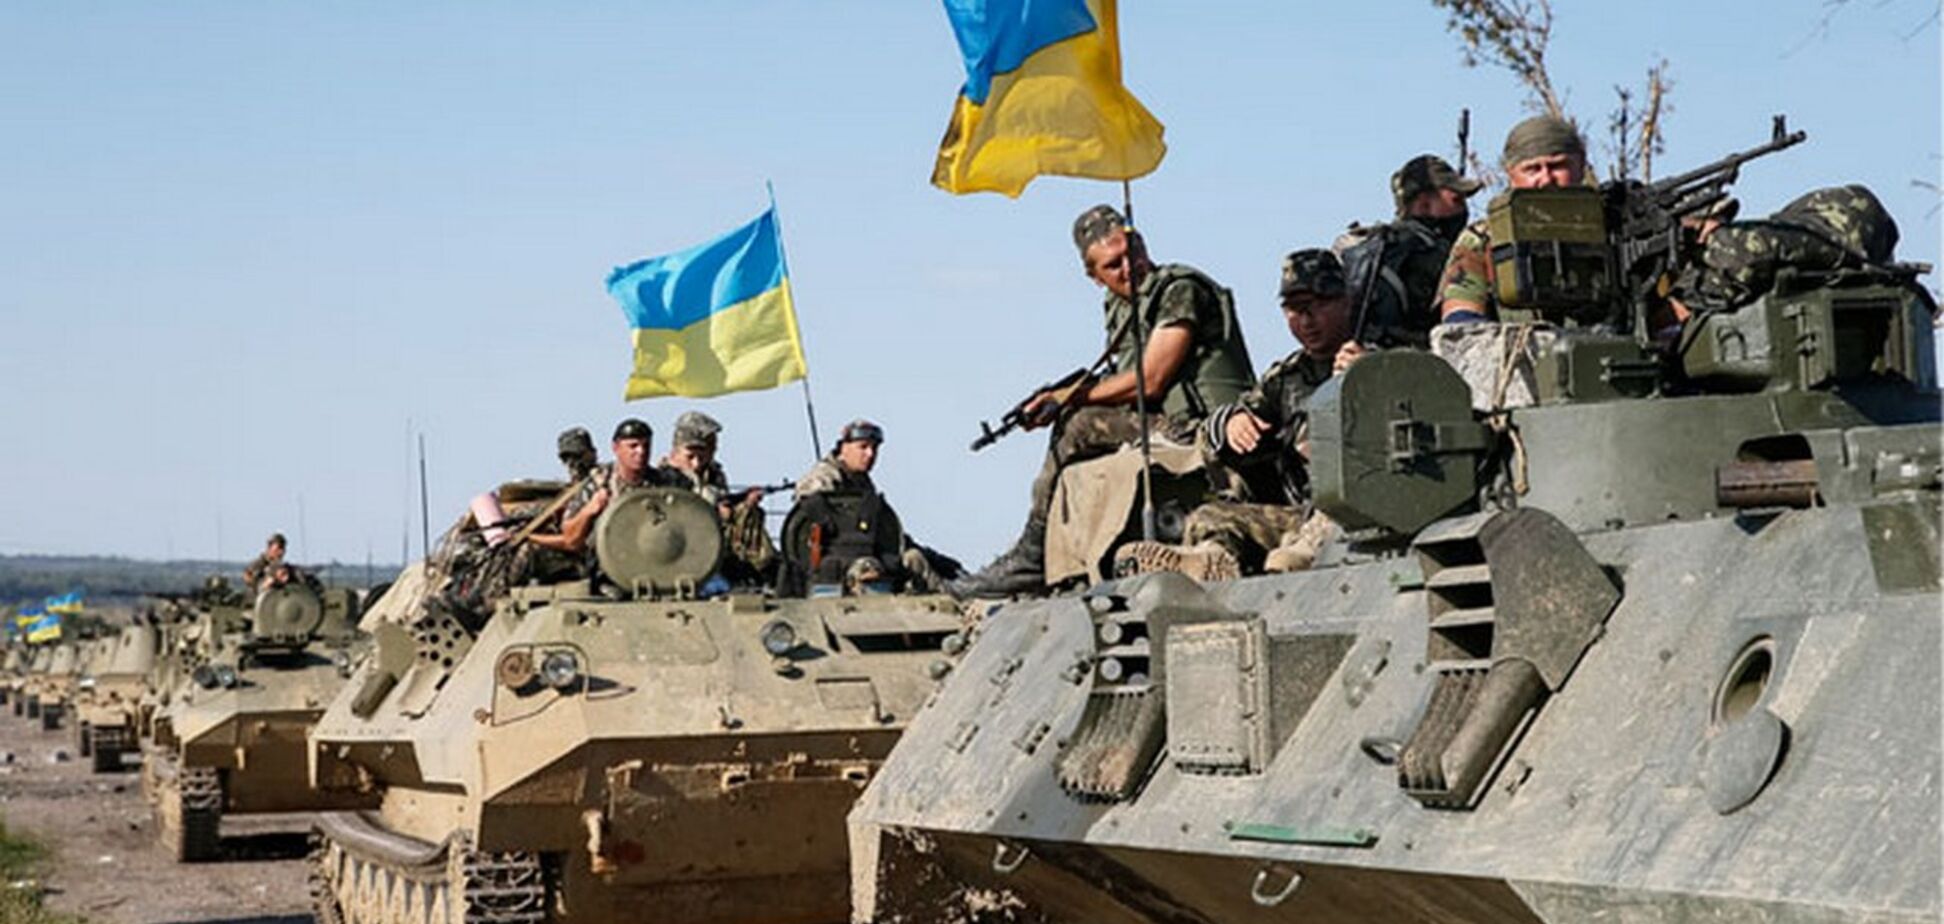 'Красавцы!' Бойцы ВСУ одурачили террористов на Донбассе